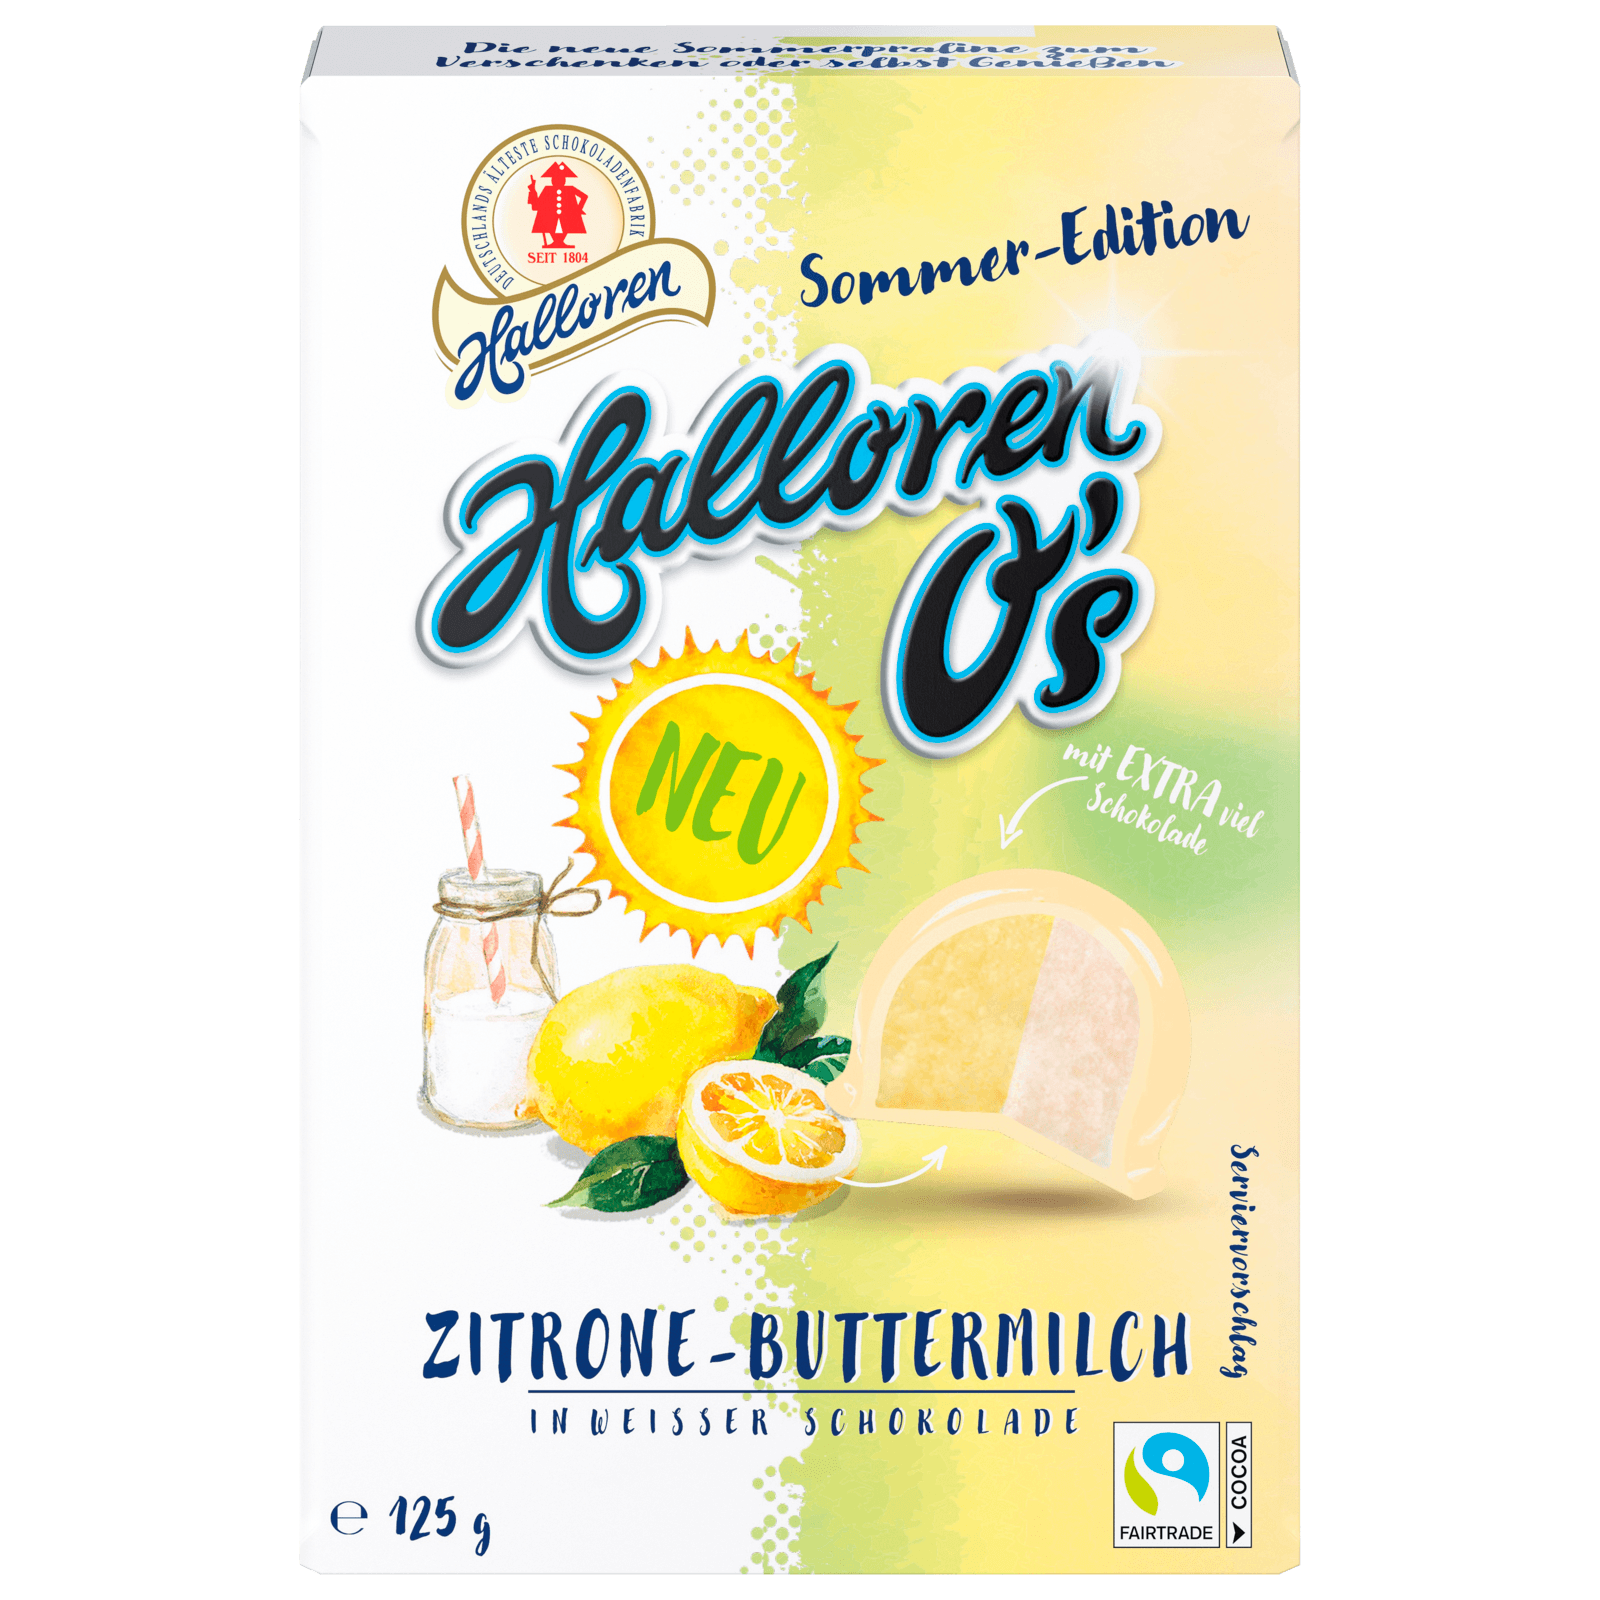 O\'s Zitrone-Buttermilch Halloren 125g online weißer bestellen! bei REWE in Schokolade